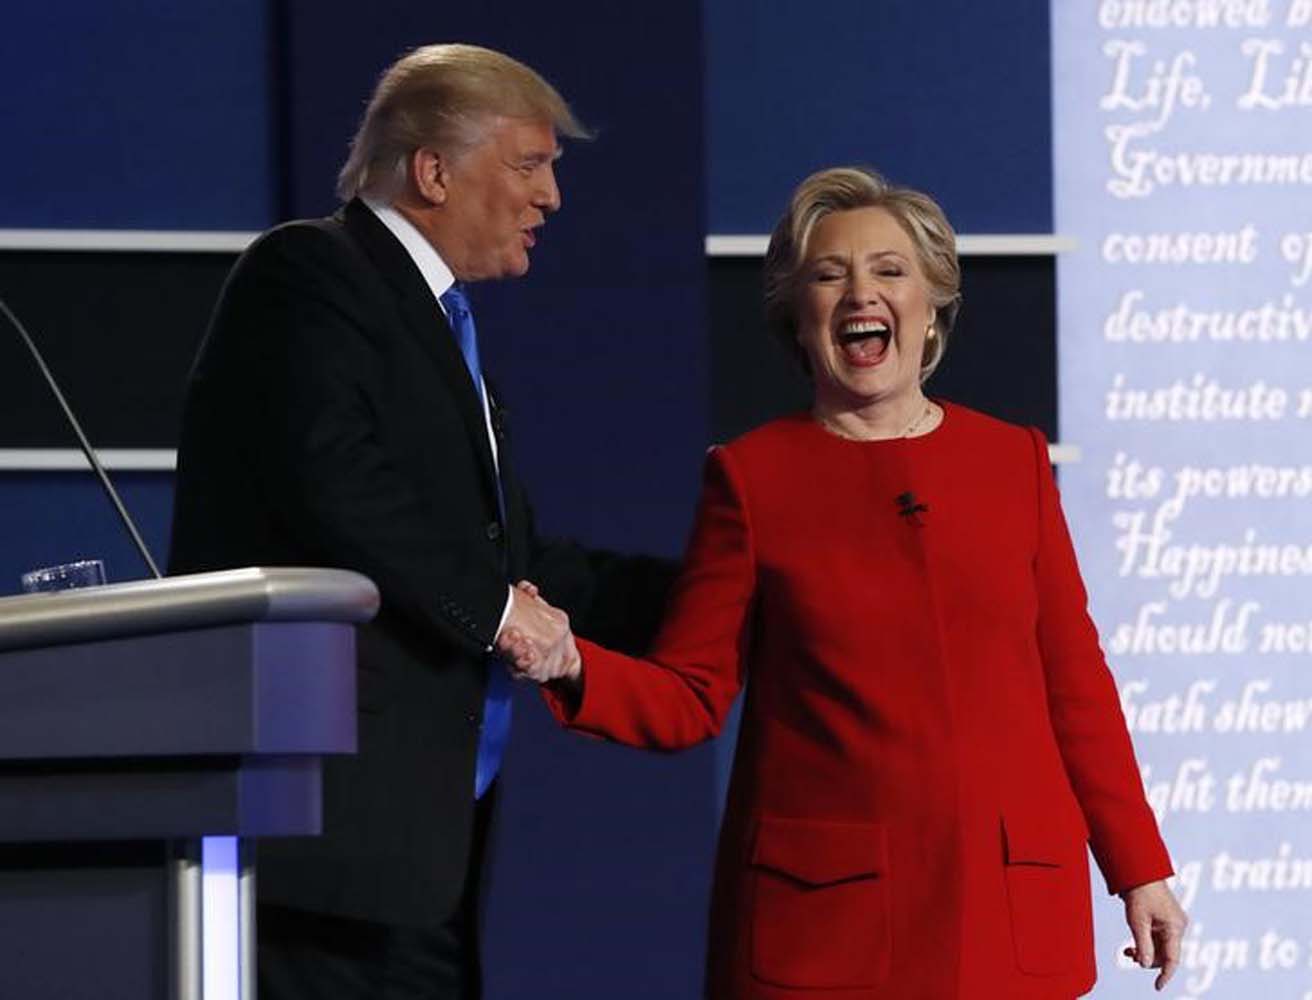 Hillary Clinton reaparece renovada tras debate y Trump sale a la caza del voto latino